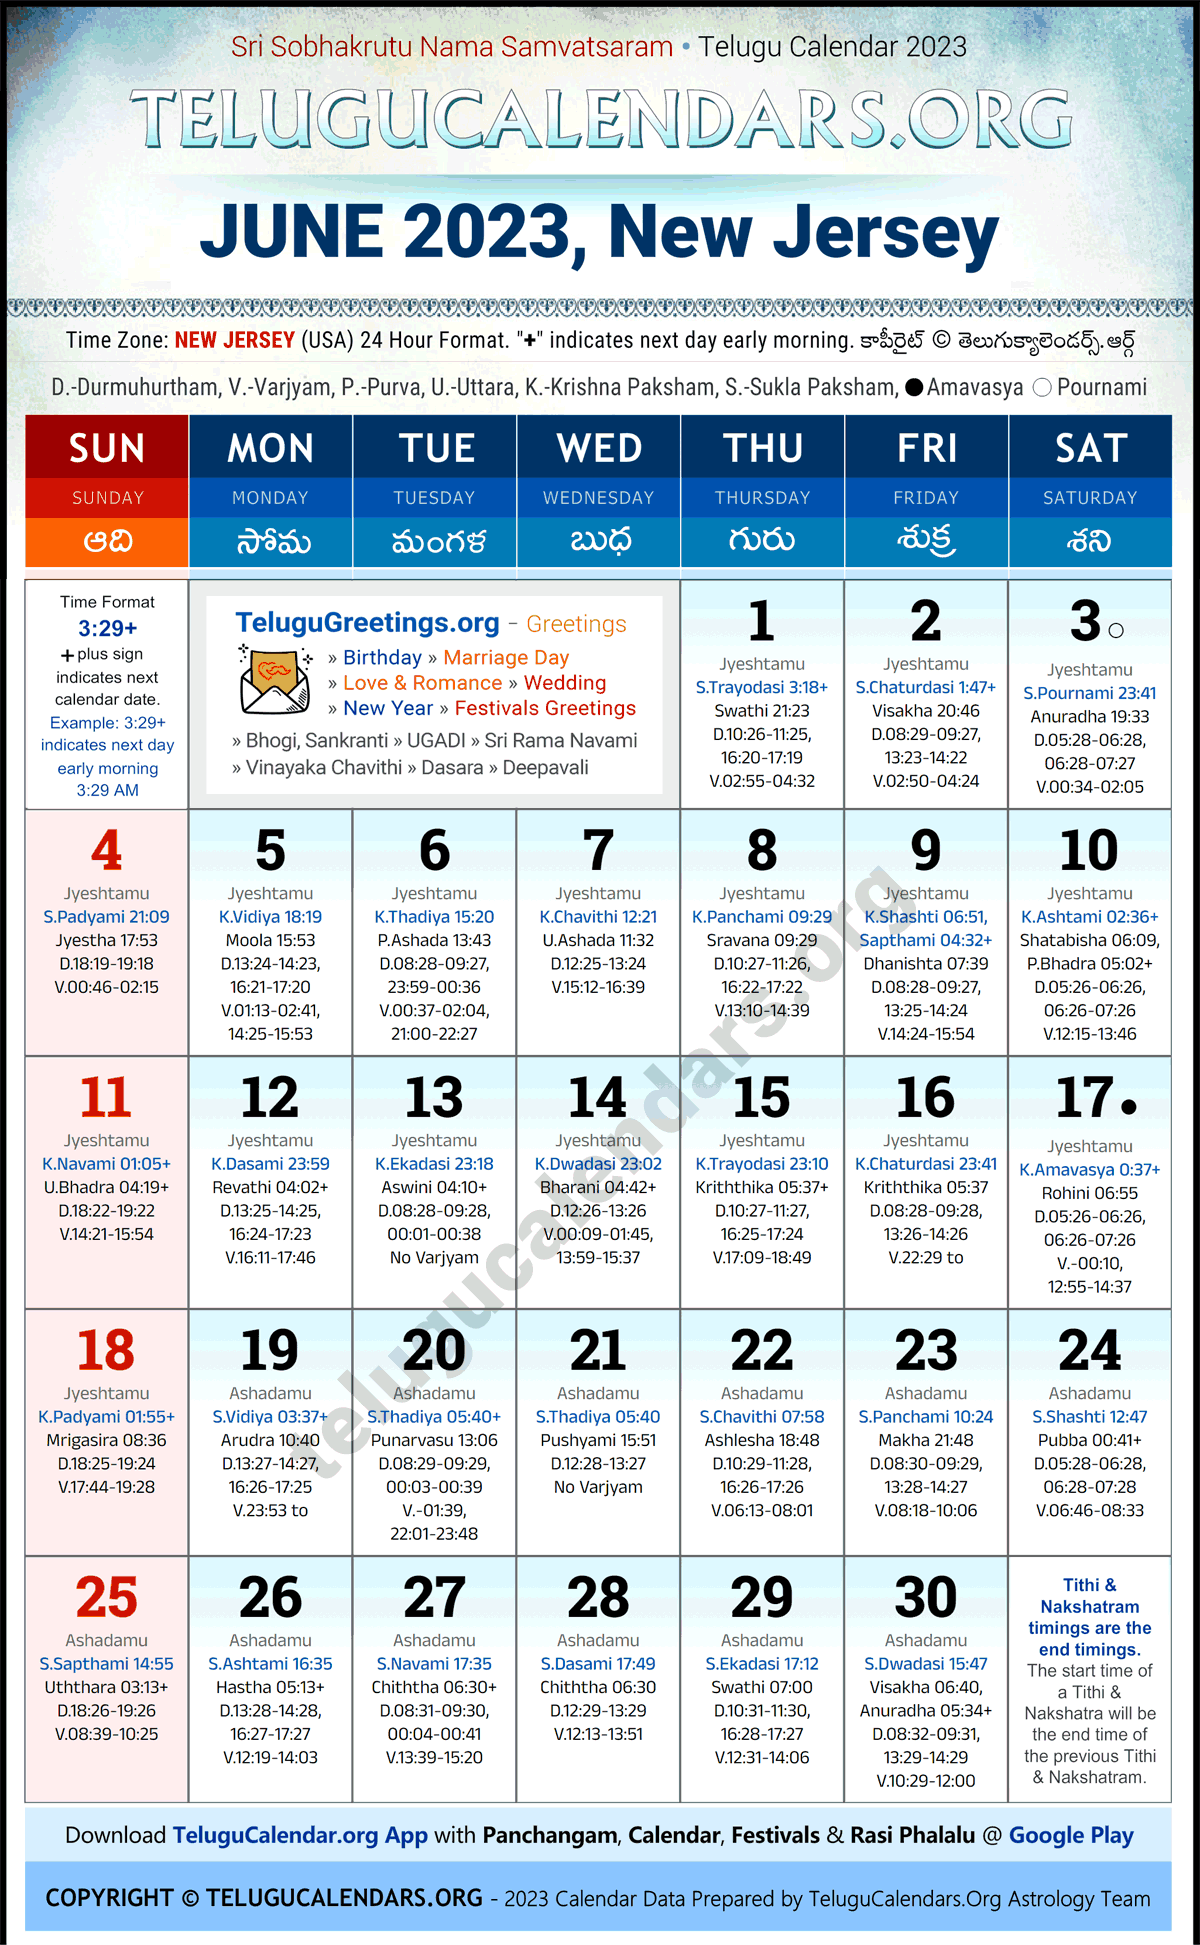 Telugu Calendar 2023 June Festivals for New Jersey